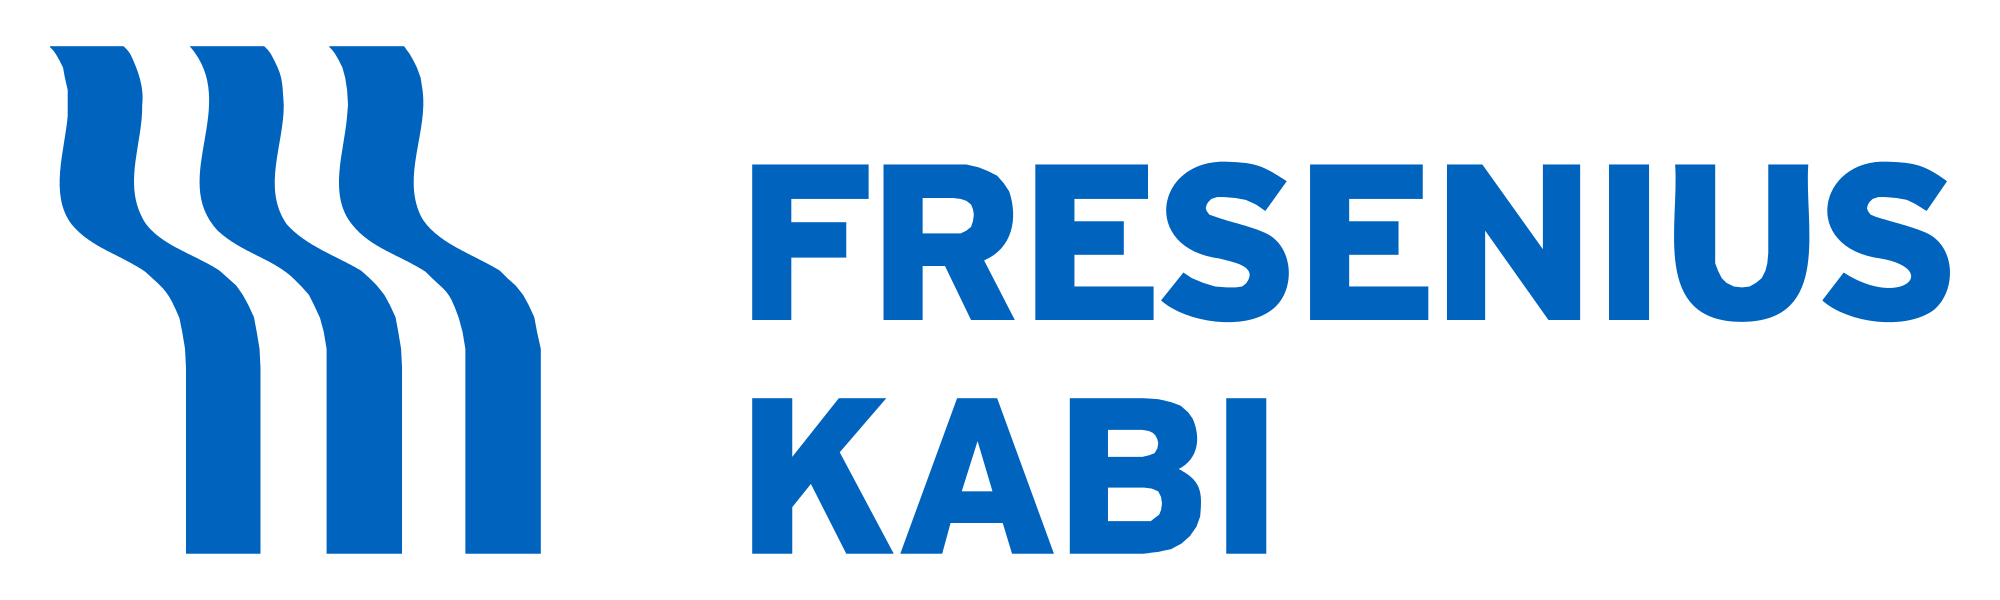 Fresnius Kabi